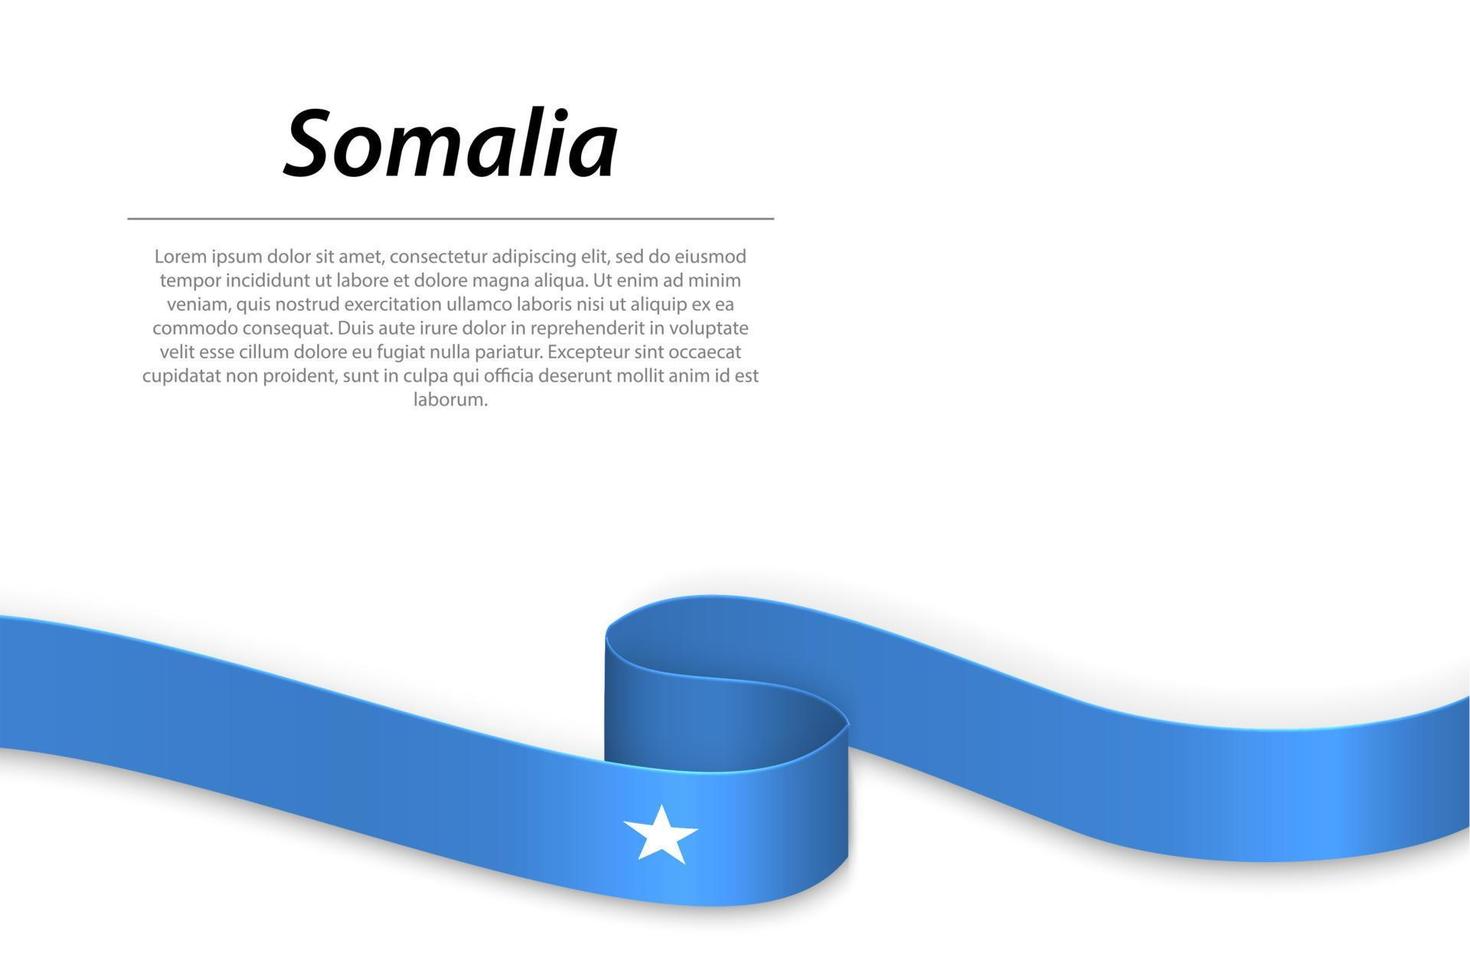 agitando nastro o bandiera con bandiera di Somalia vettore